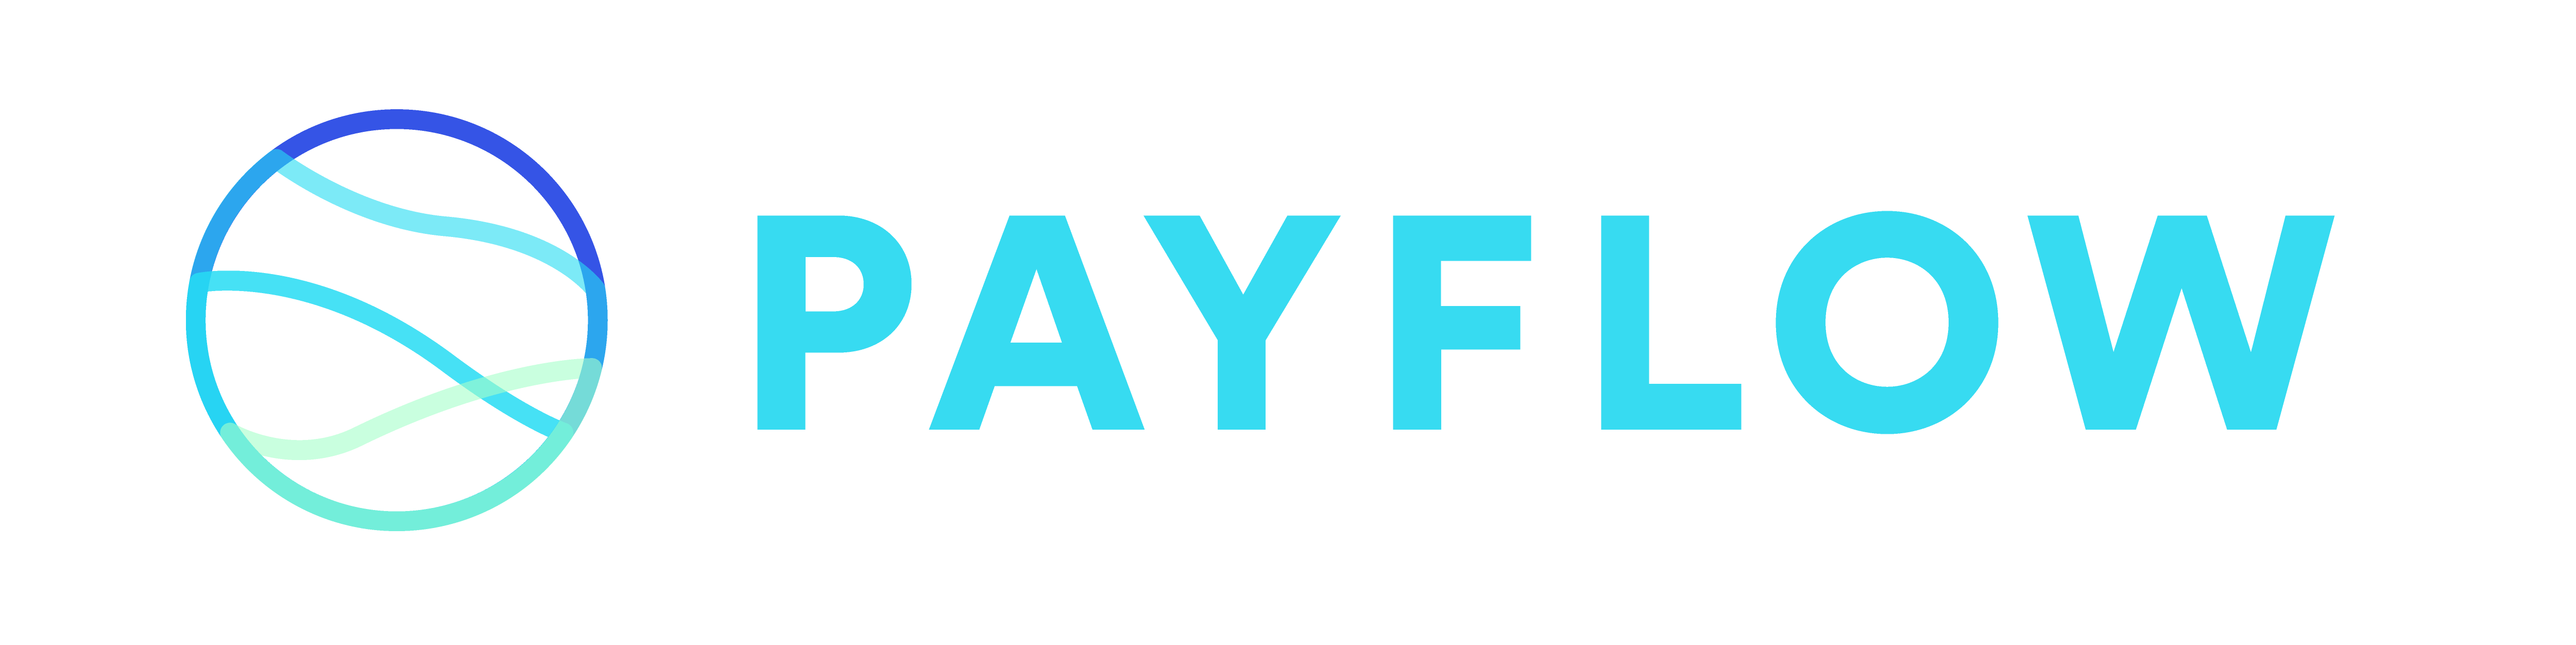 Payflow-logo